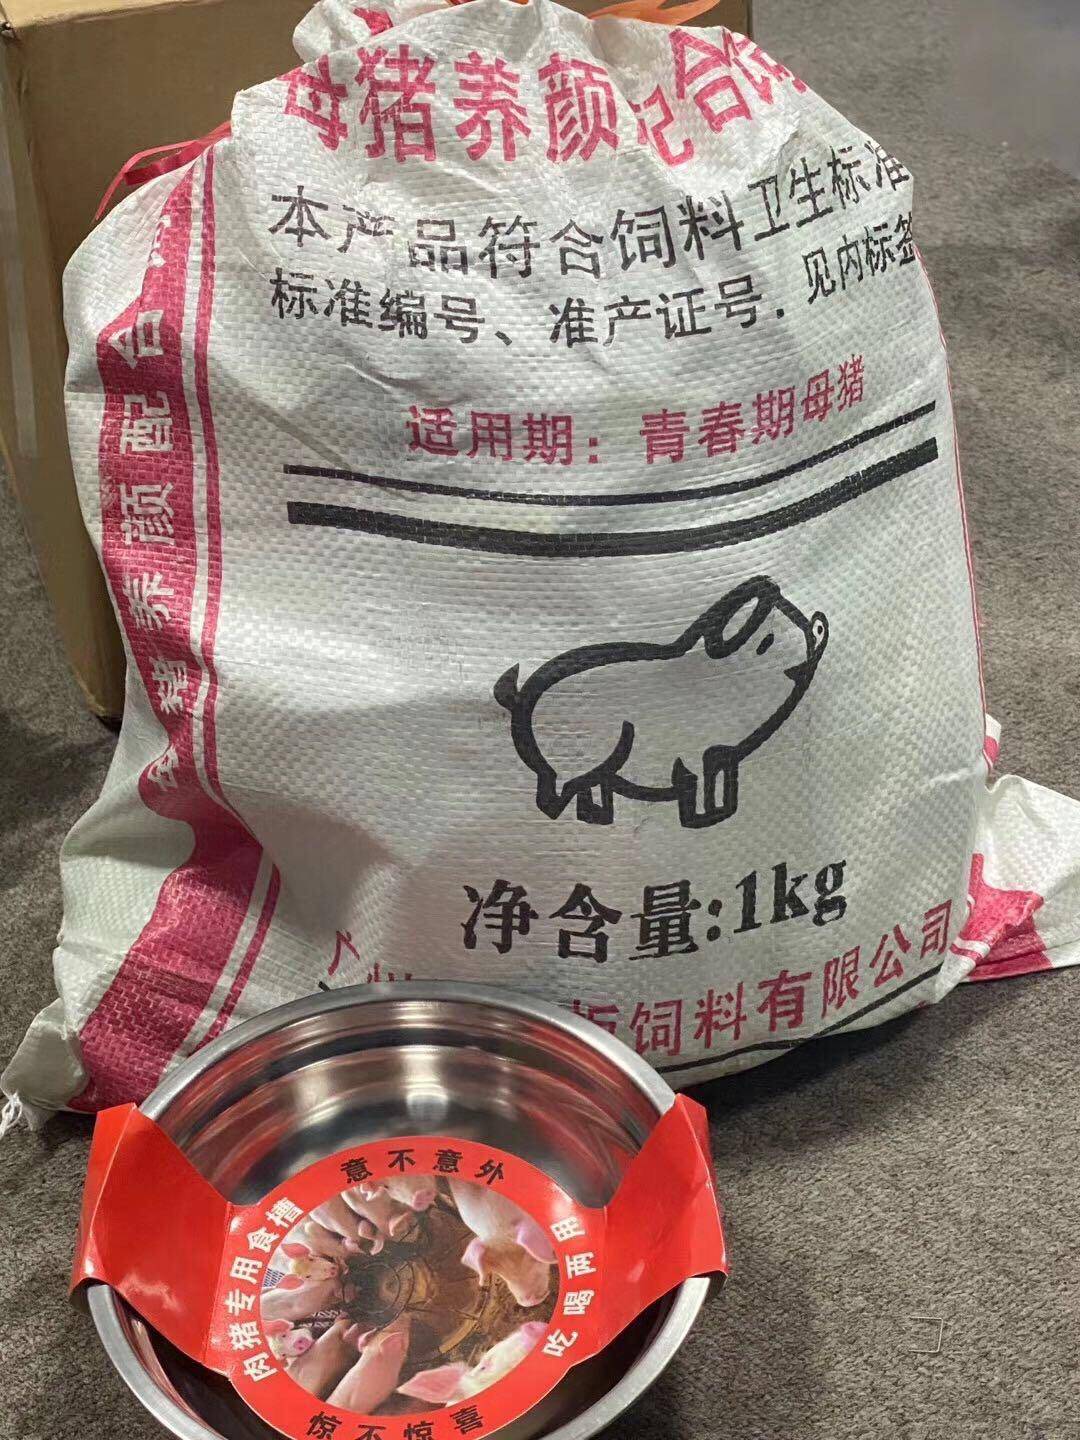 像极了上个世纪养猪暴发户家里的高营养猪饲料包装袋,还赠送了一个